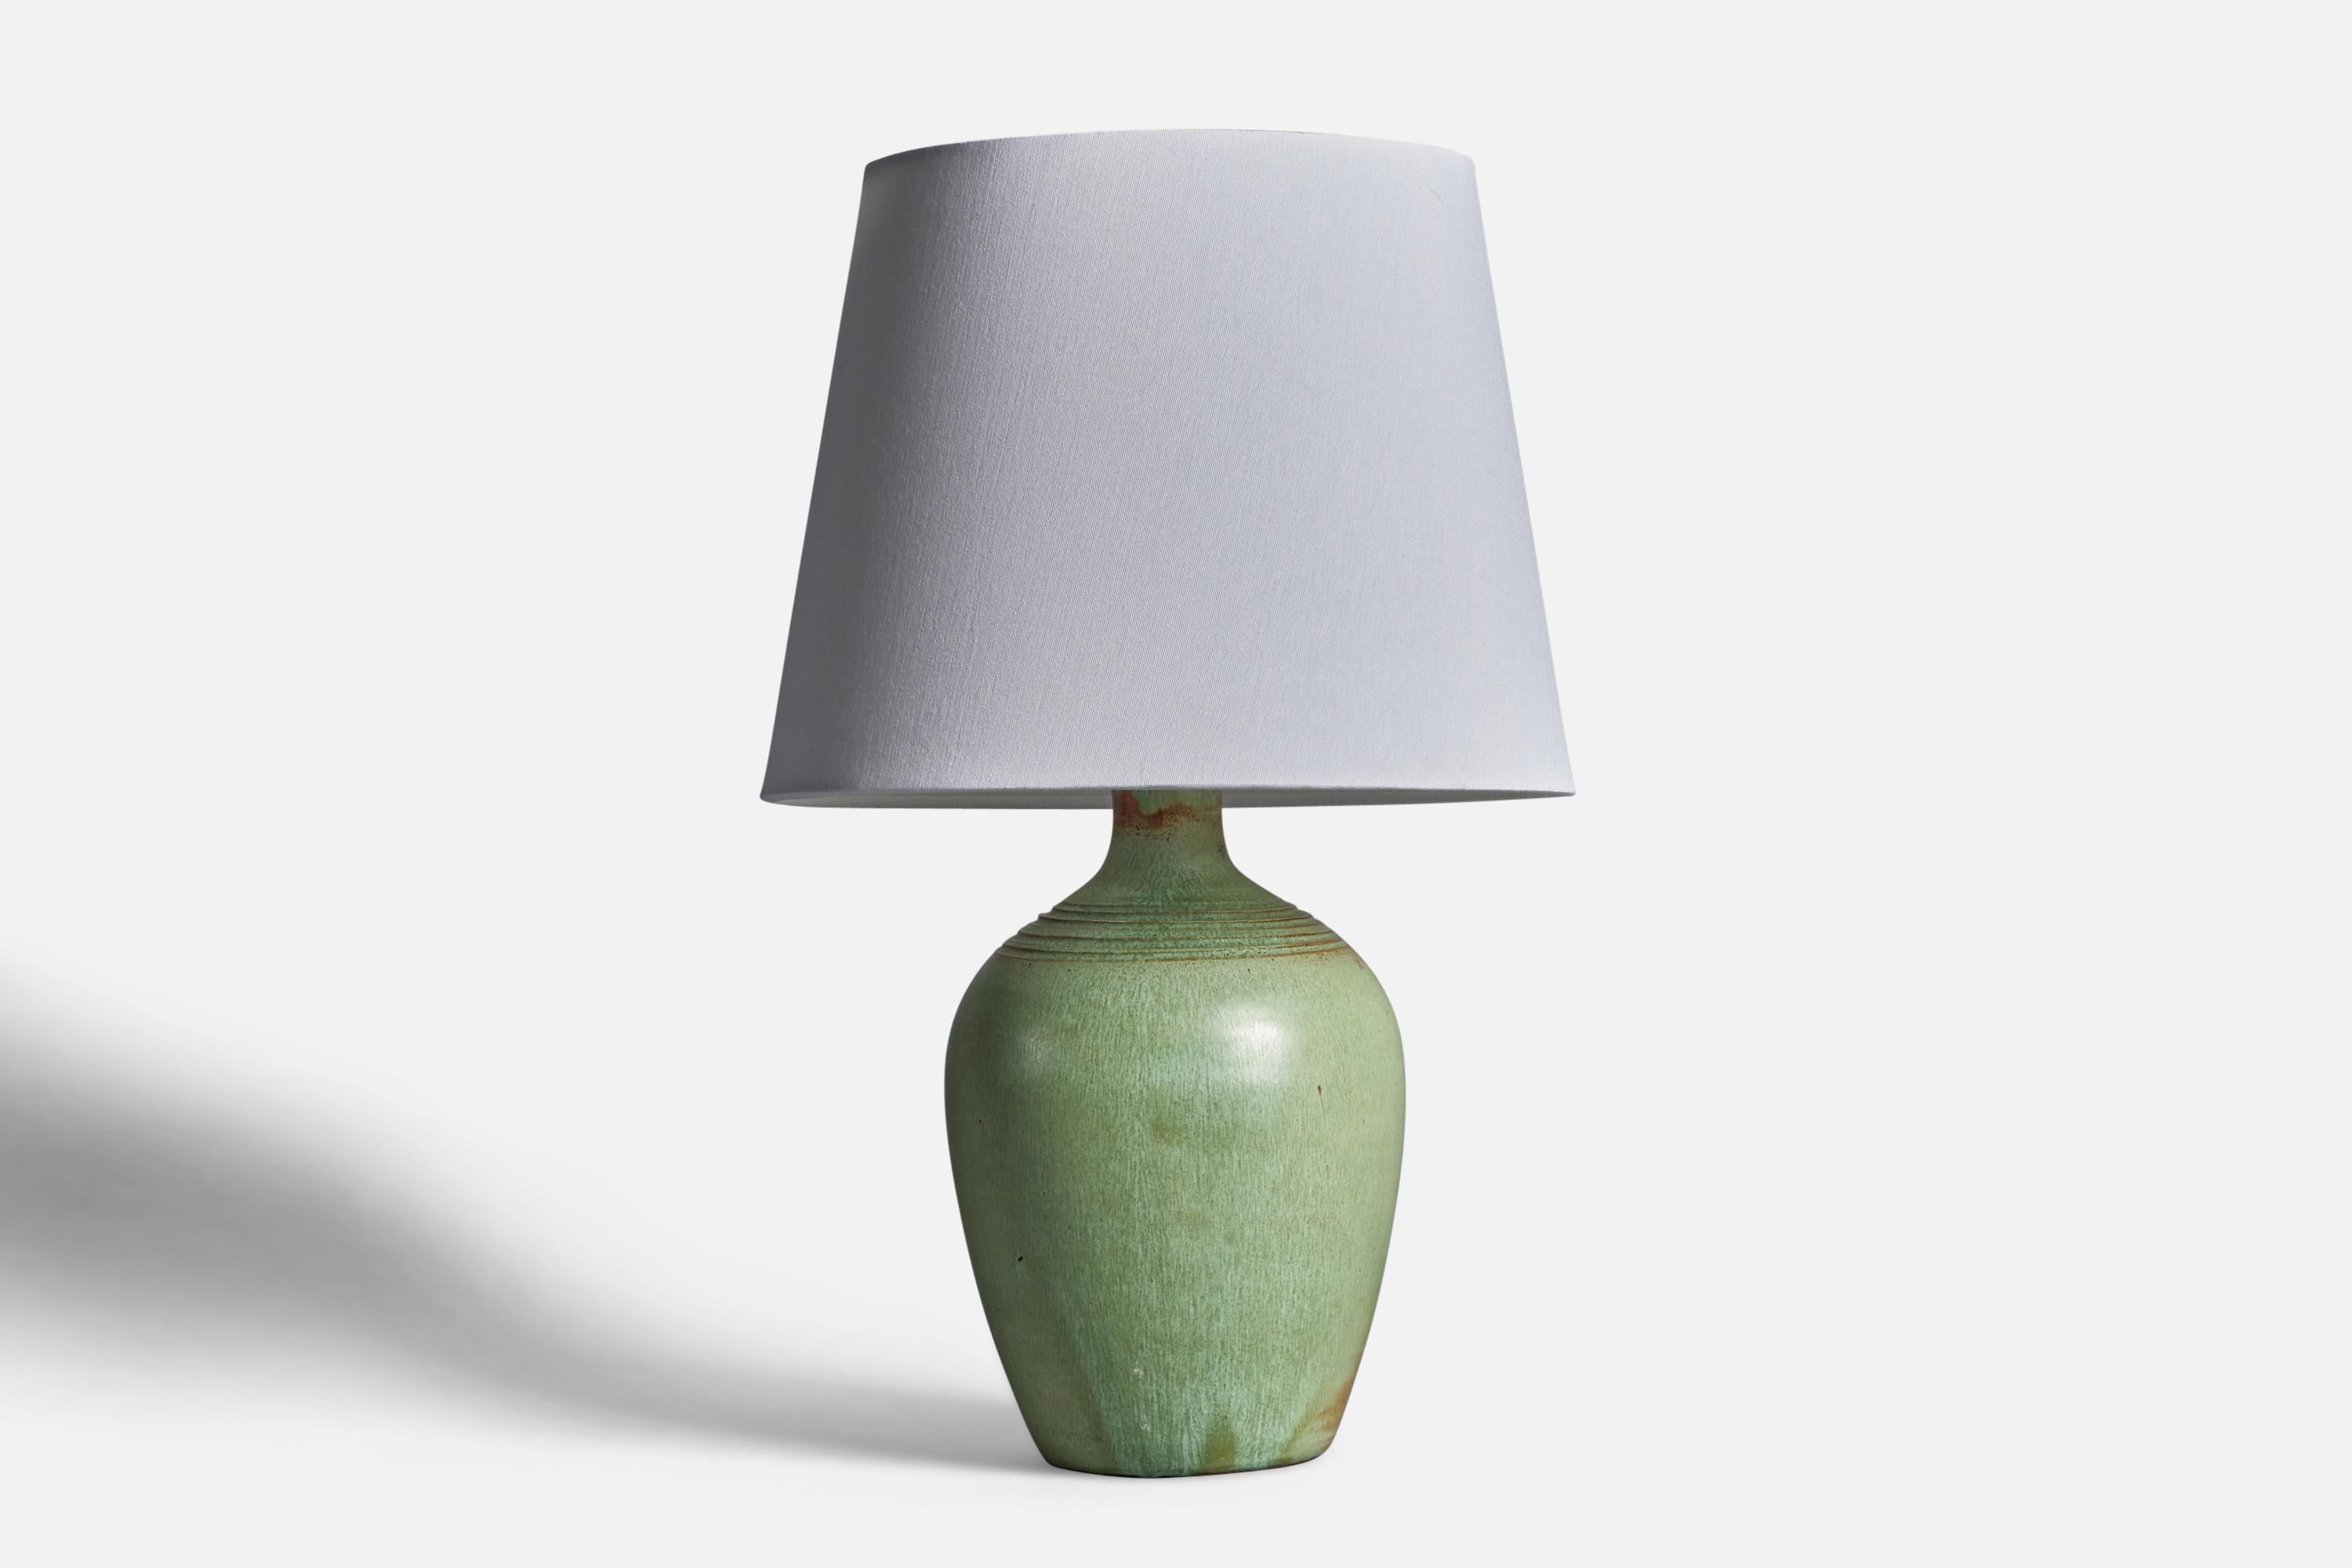 Lampe de table en céramique à glaçure verte et incisée, conçue et produite en Caroline du Nord, États-Unis, années 1950.

Dimensions de la lampe (pouces) : 12.5